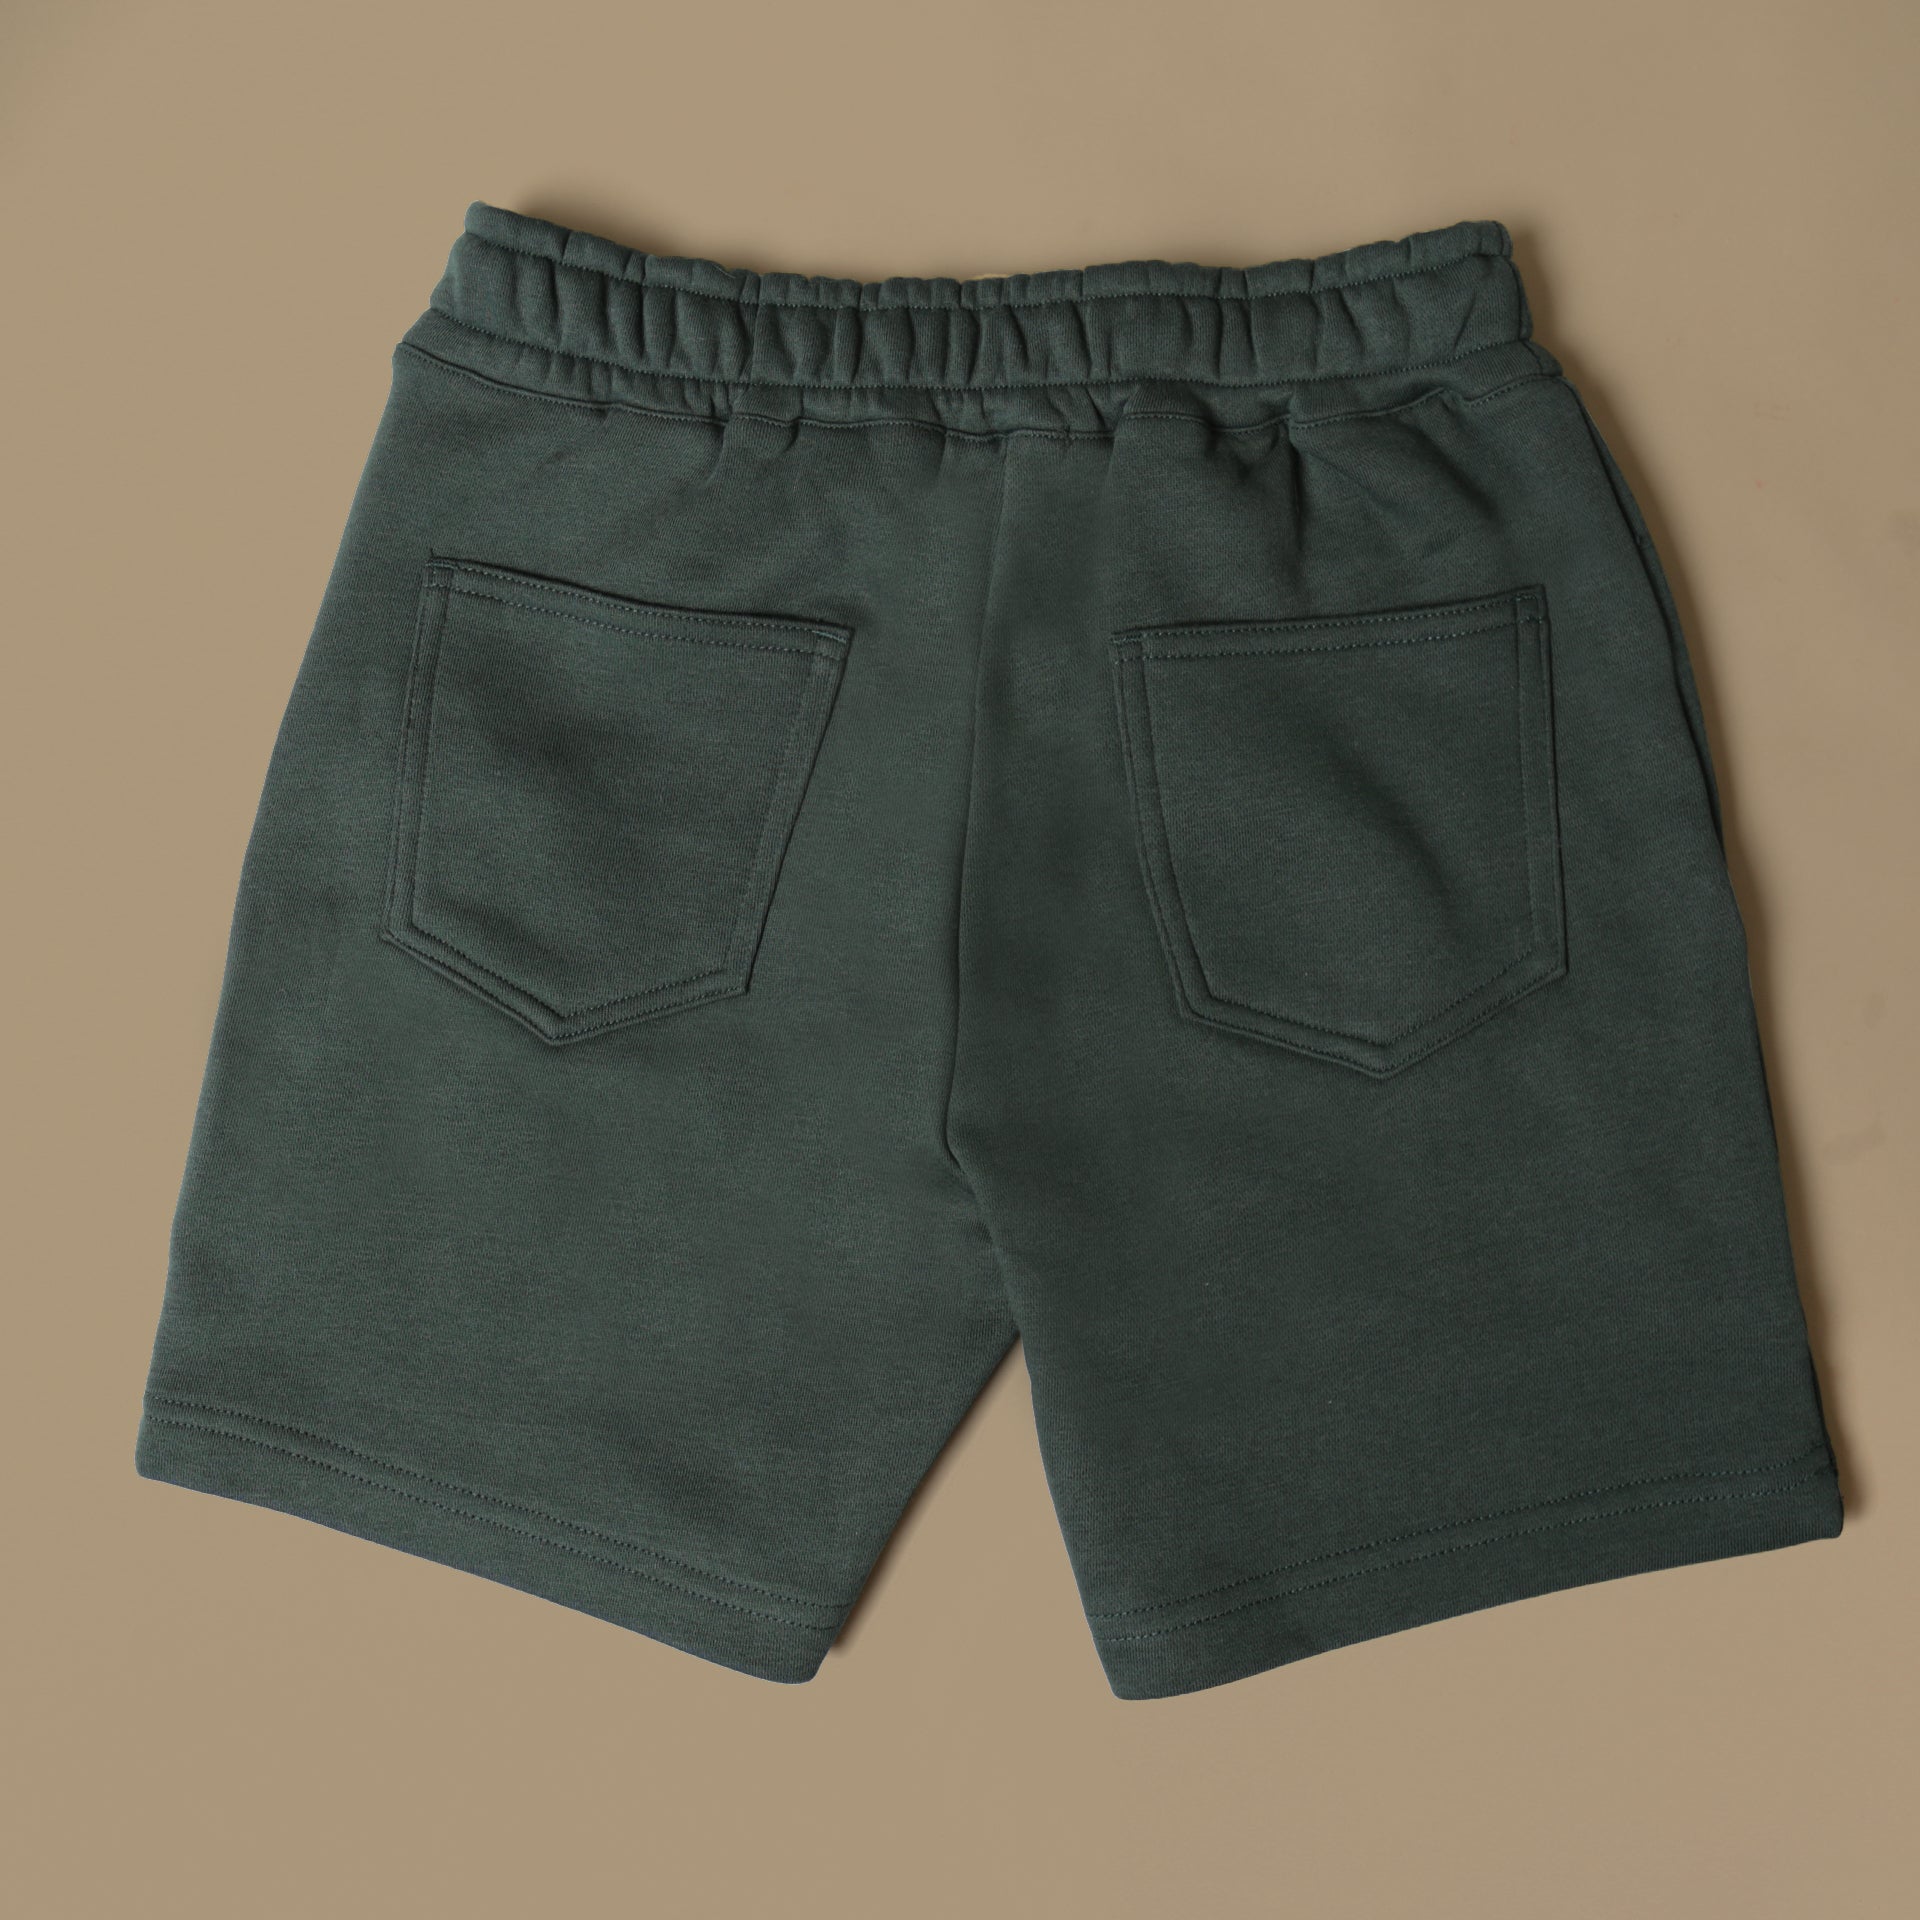 Roamer Shorts - Forest Sweat Short